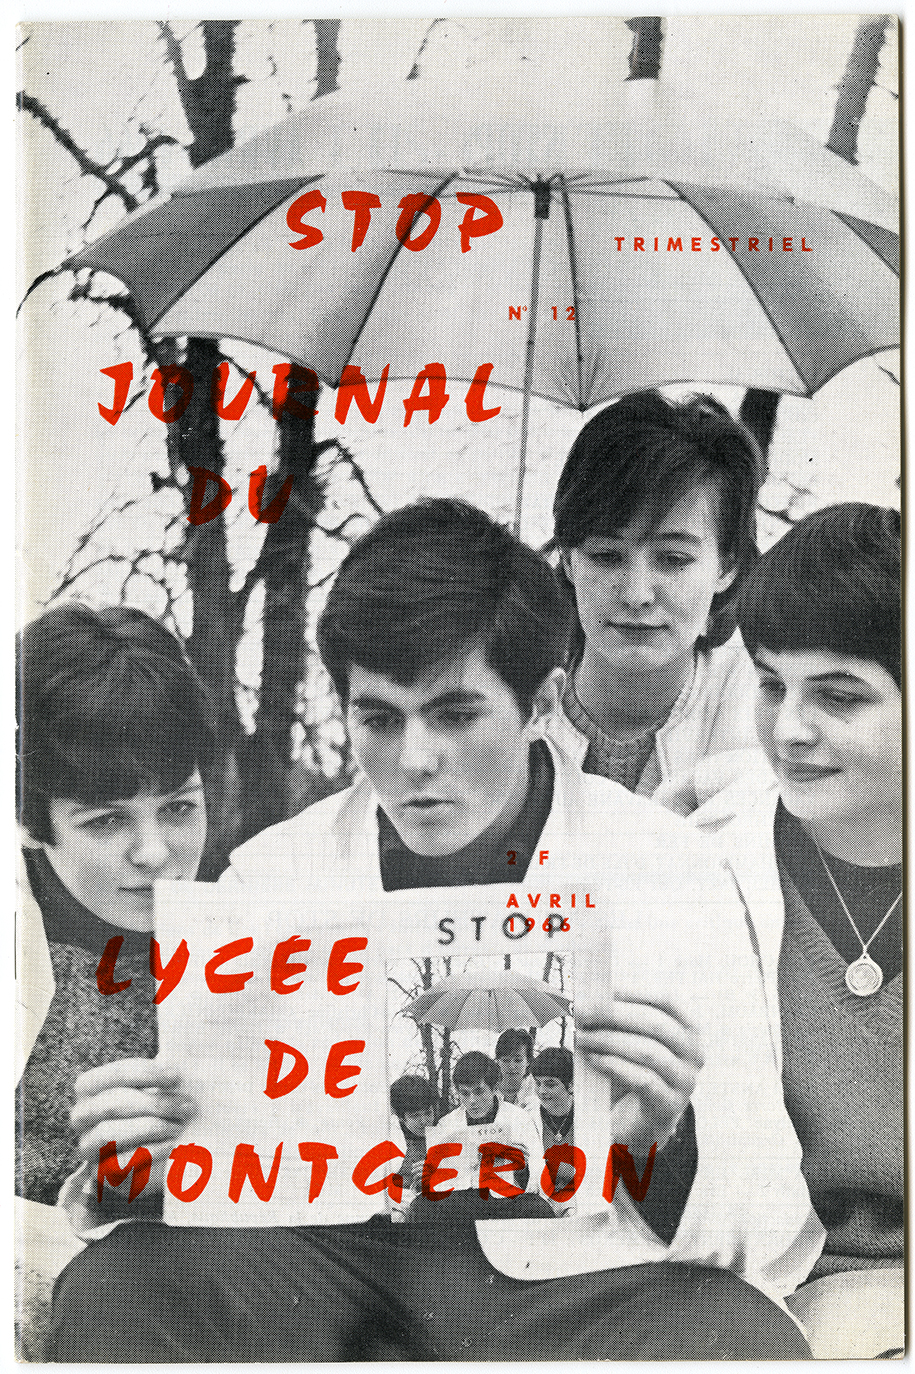 Page couverture de Stop (no 12), la revue trimestrielle du lycée pilote de Montgeron. Pierre Barret était le directeur de ce journal et Gisèle Barret y publiait régulièrement des articles. Avril 1966. Archives UdeM, P0468-B-3-D0002